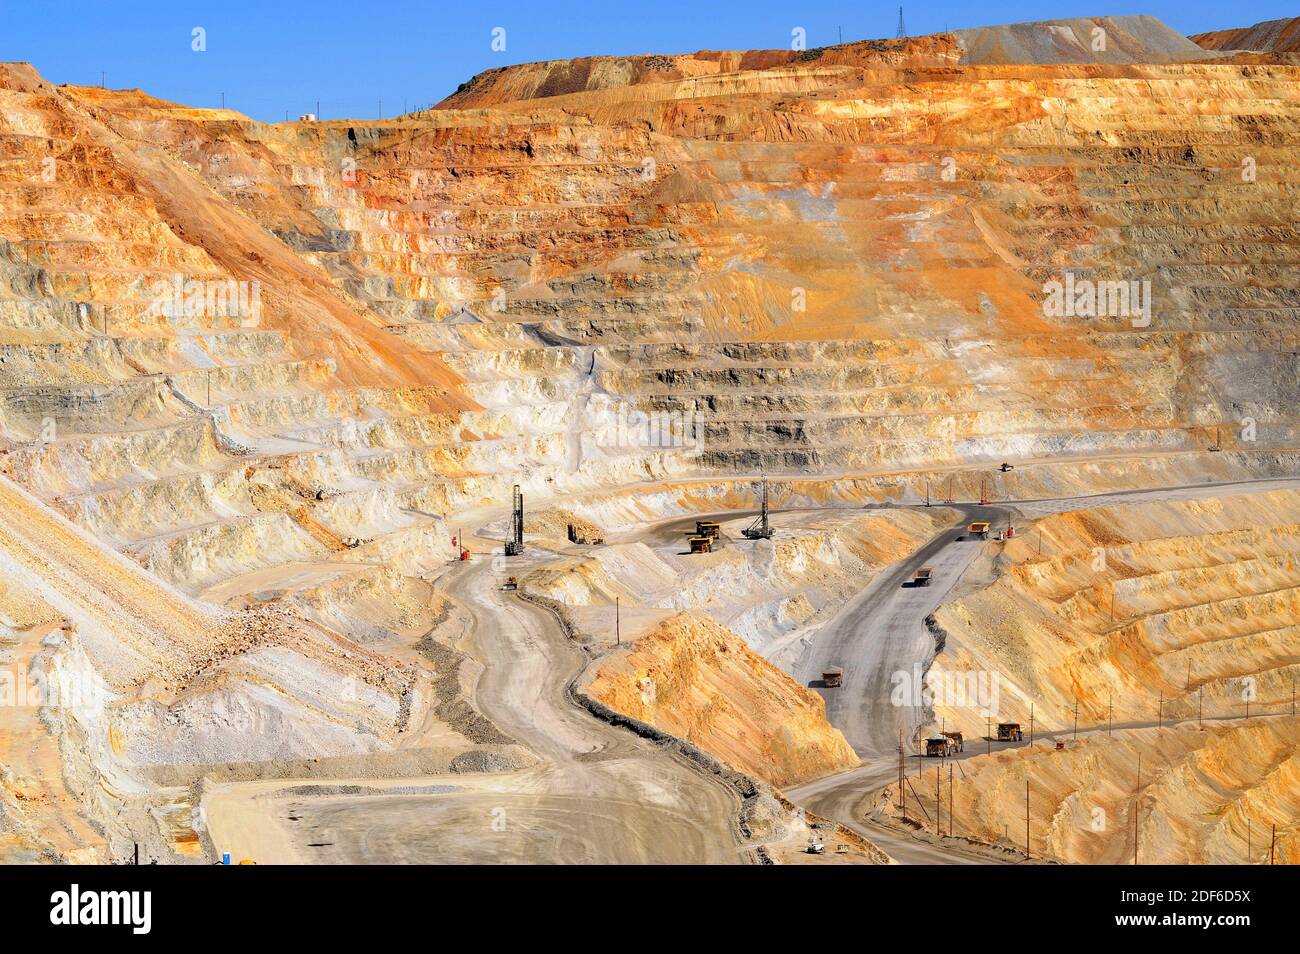 La miniera di rame di Bingham Canyon o Kennecott Copper Mine è il più grande scavo artificiale del mondo. Oquirrh Mountains, Salt Lake City, Utah, Stati Uniti. Foto Stock